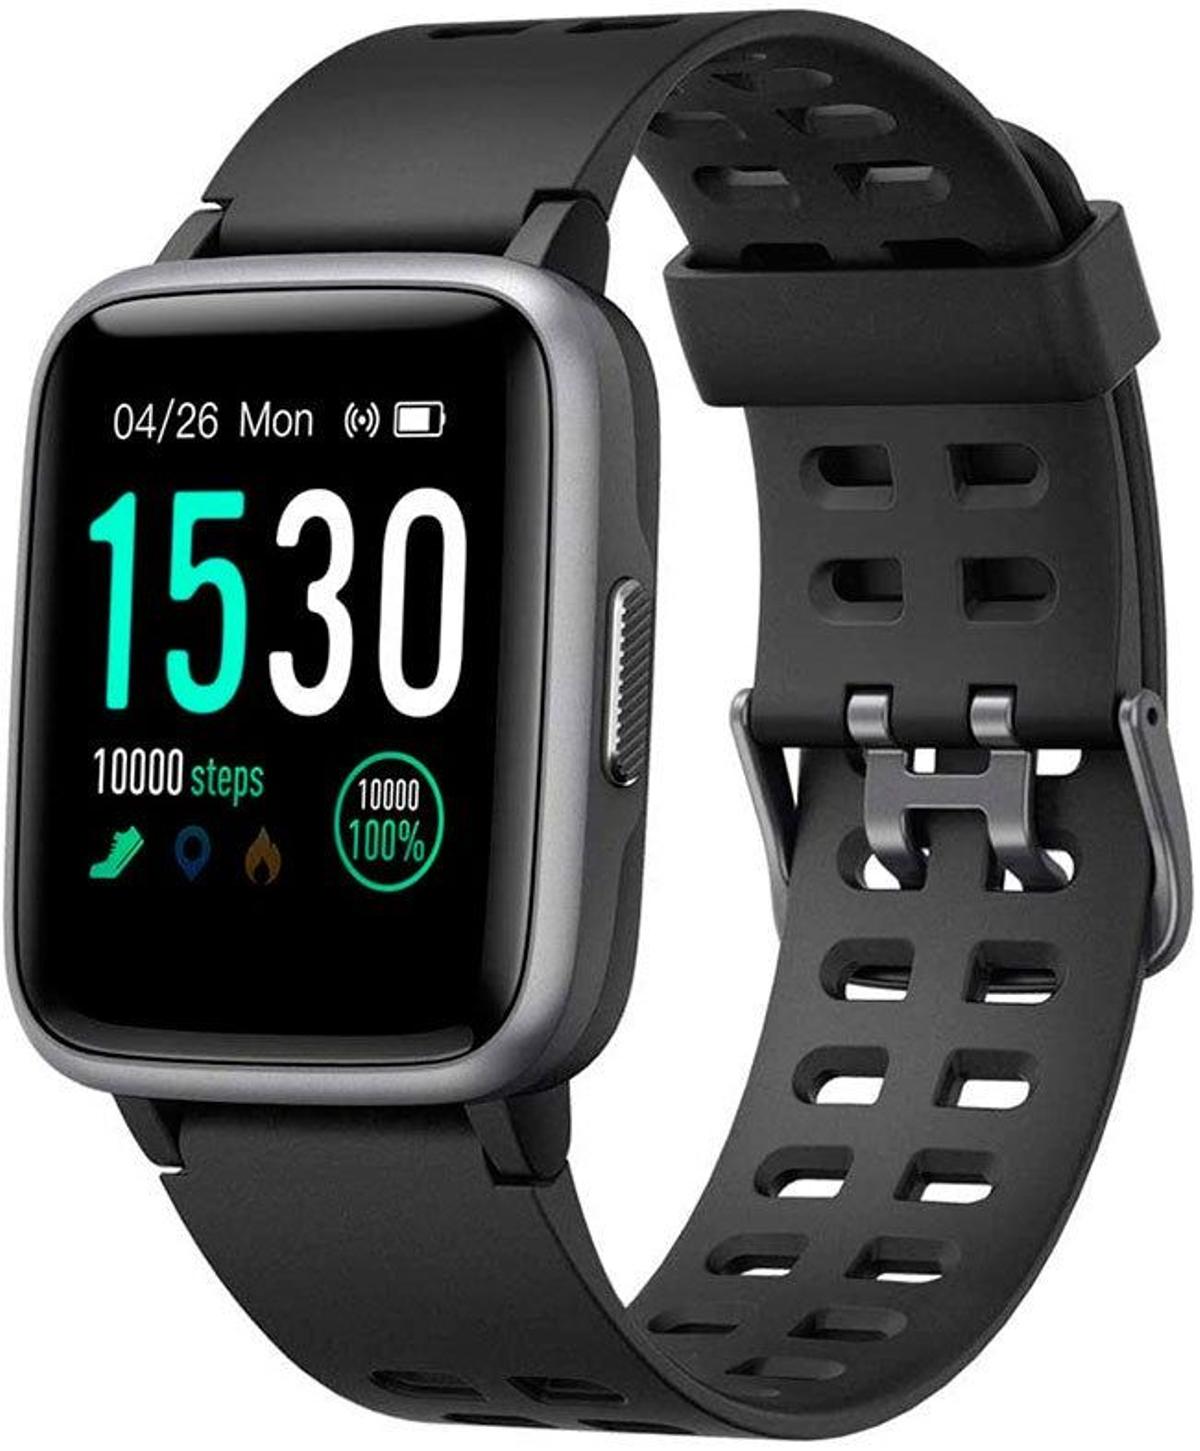 Smartwatch Yamay impermeable en negro a la venta en Amazon. (Precio: 31,99 euros)